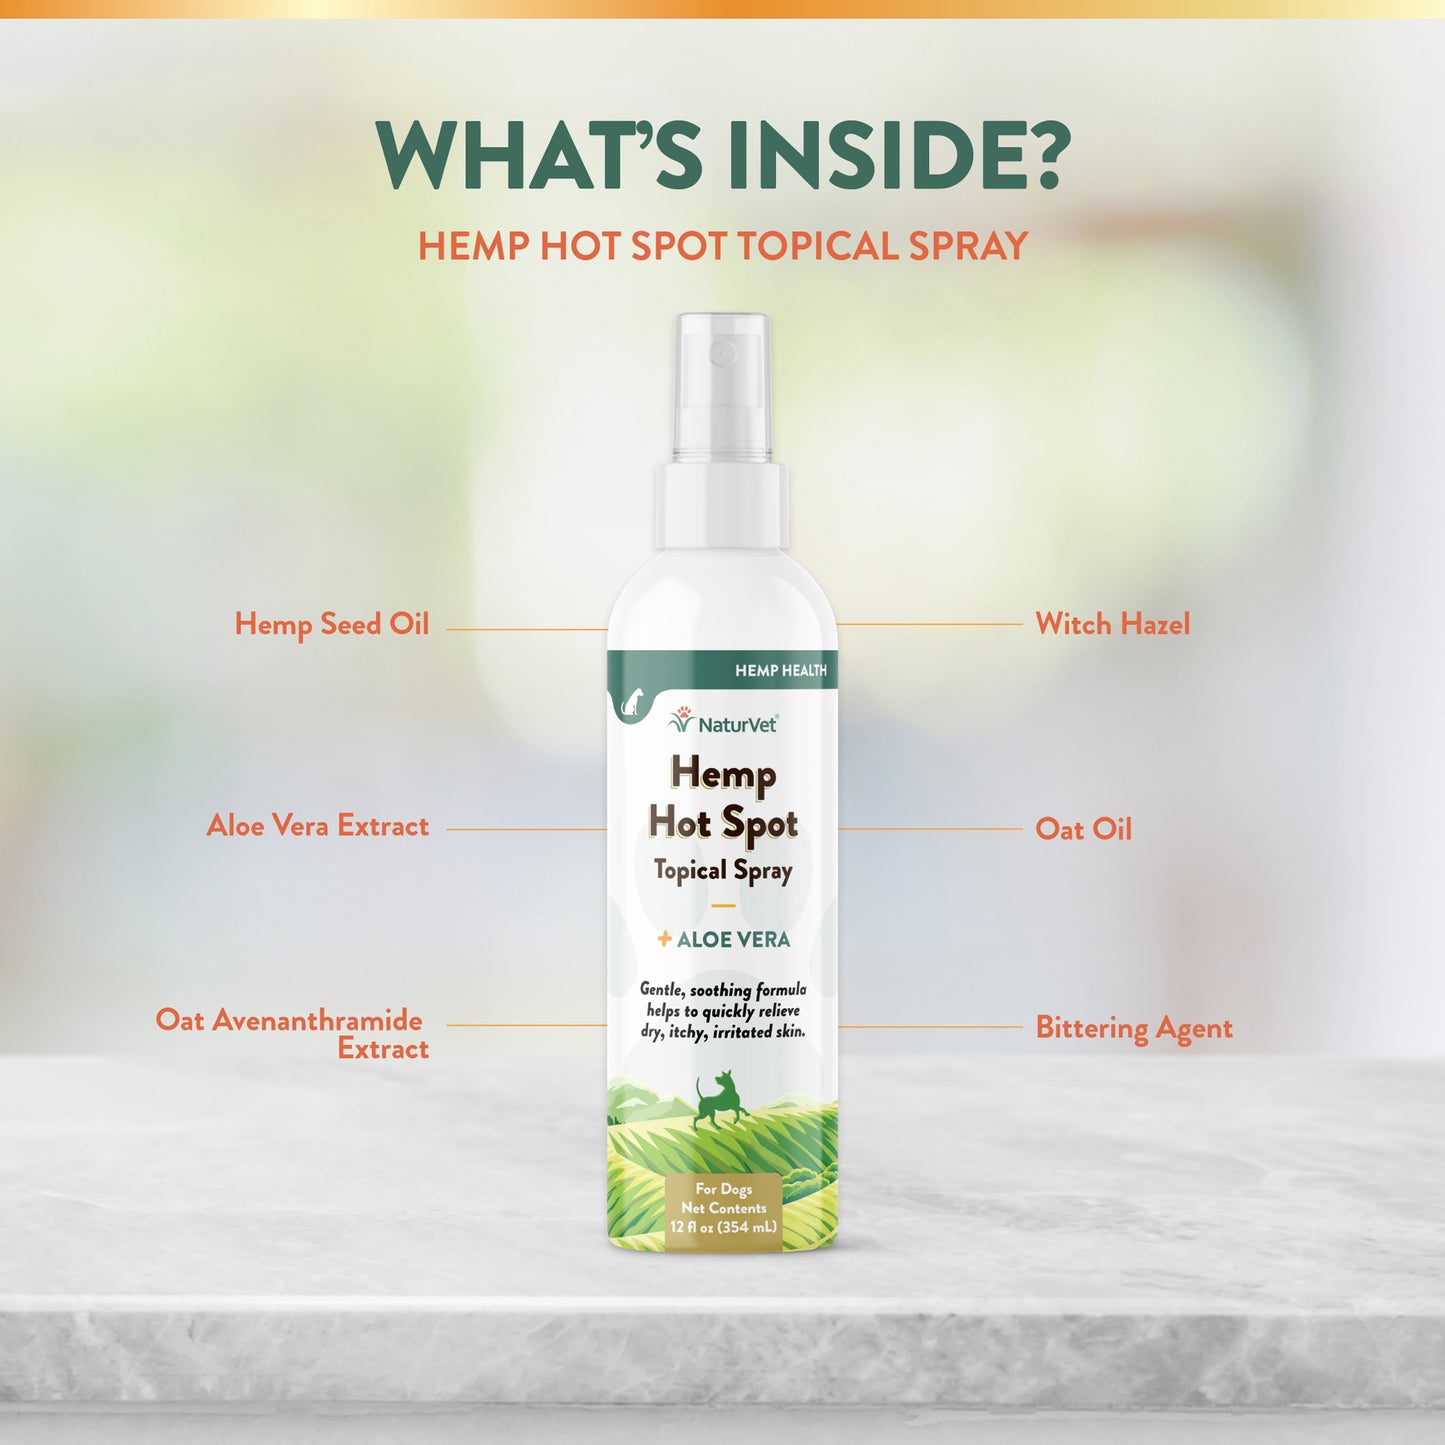 Hemp Hot Spot Spray